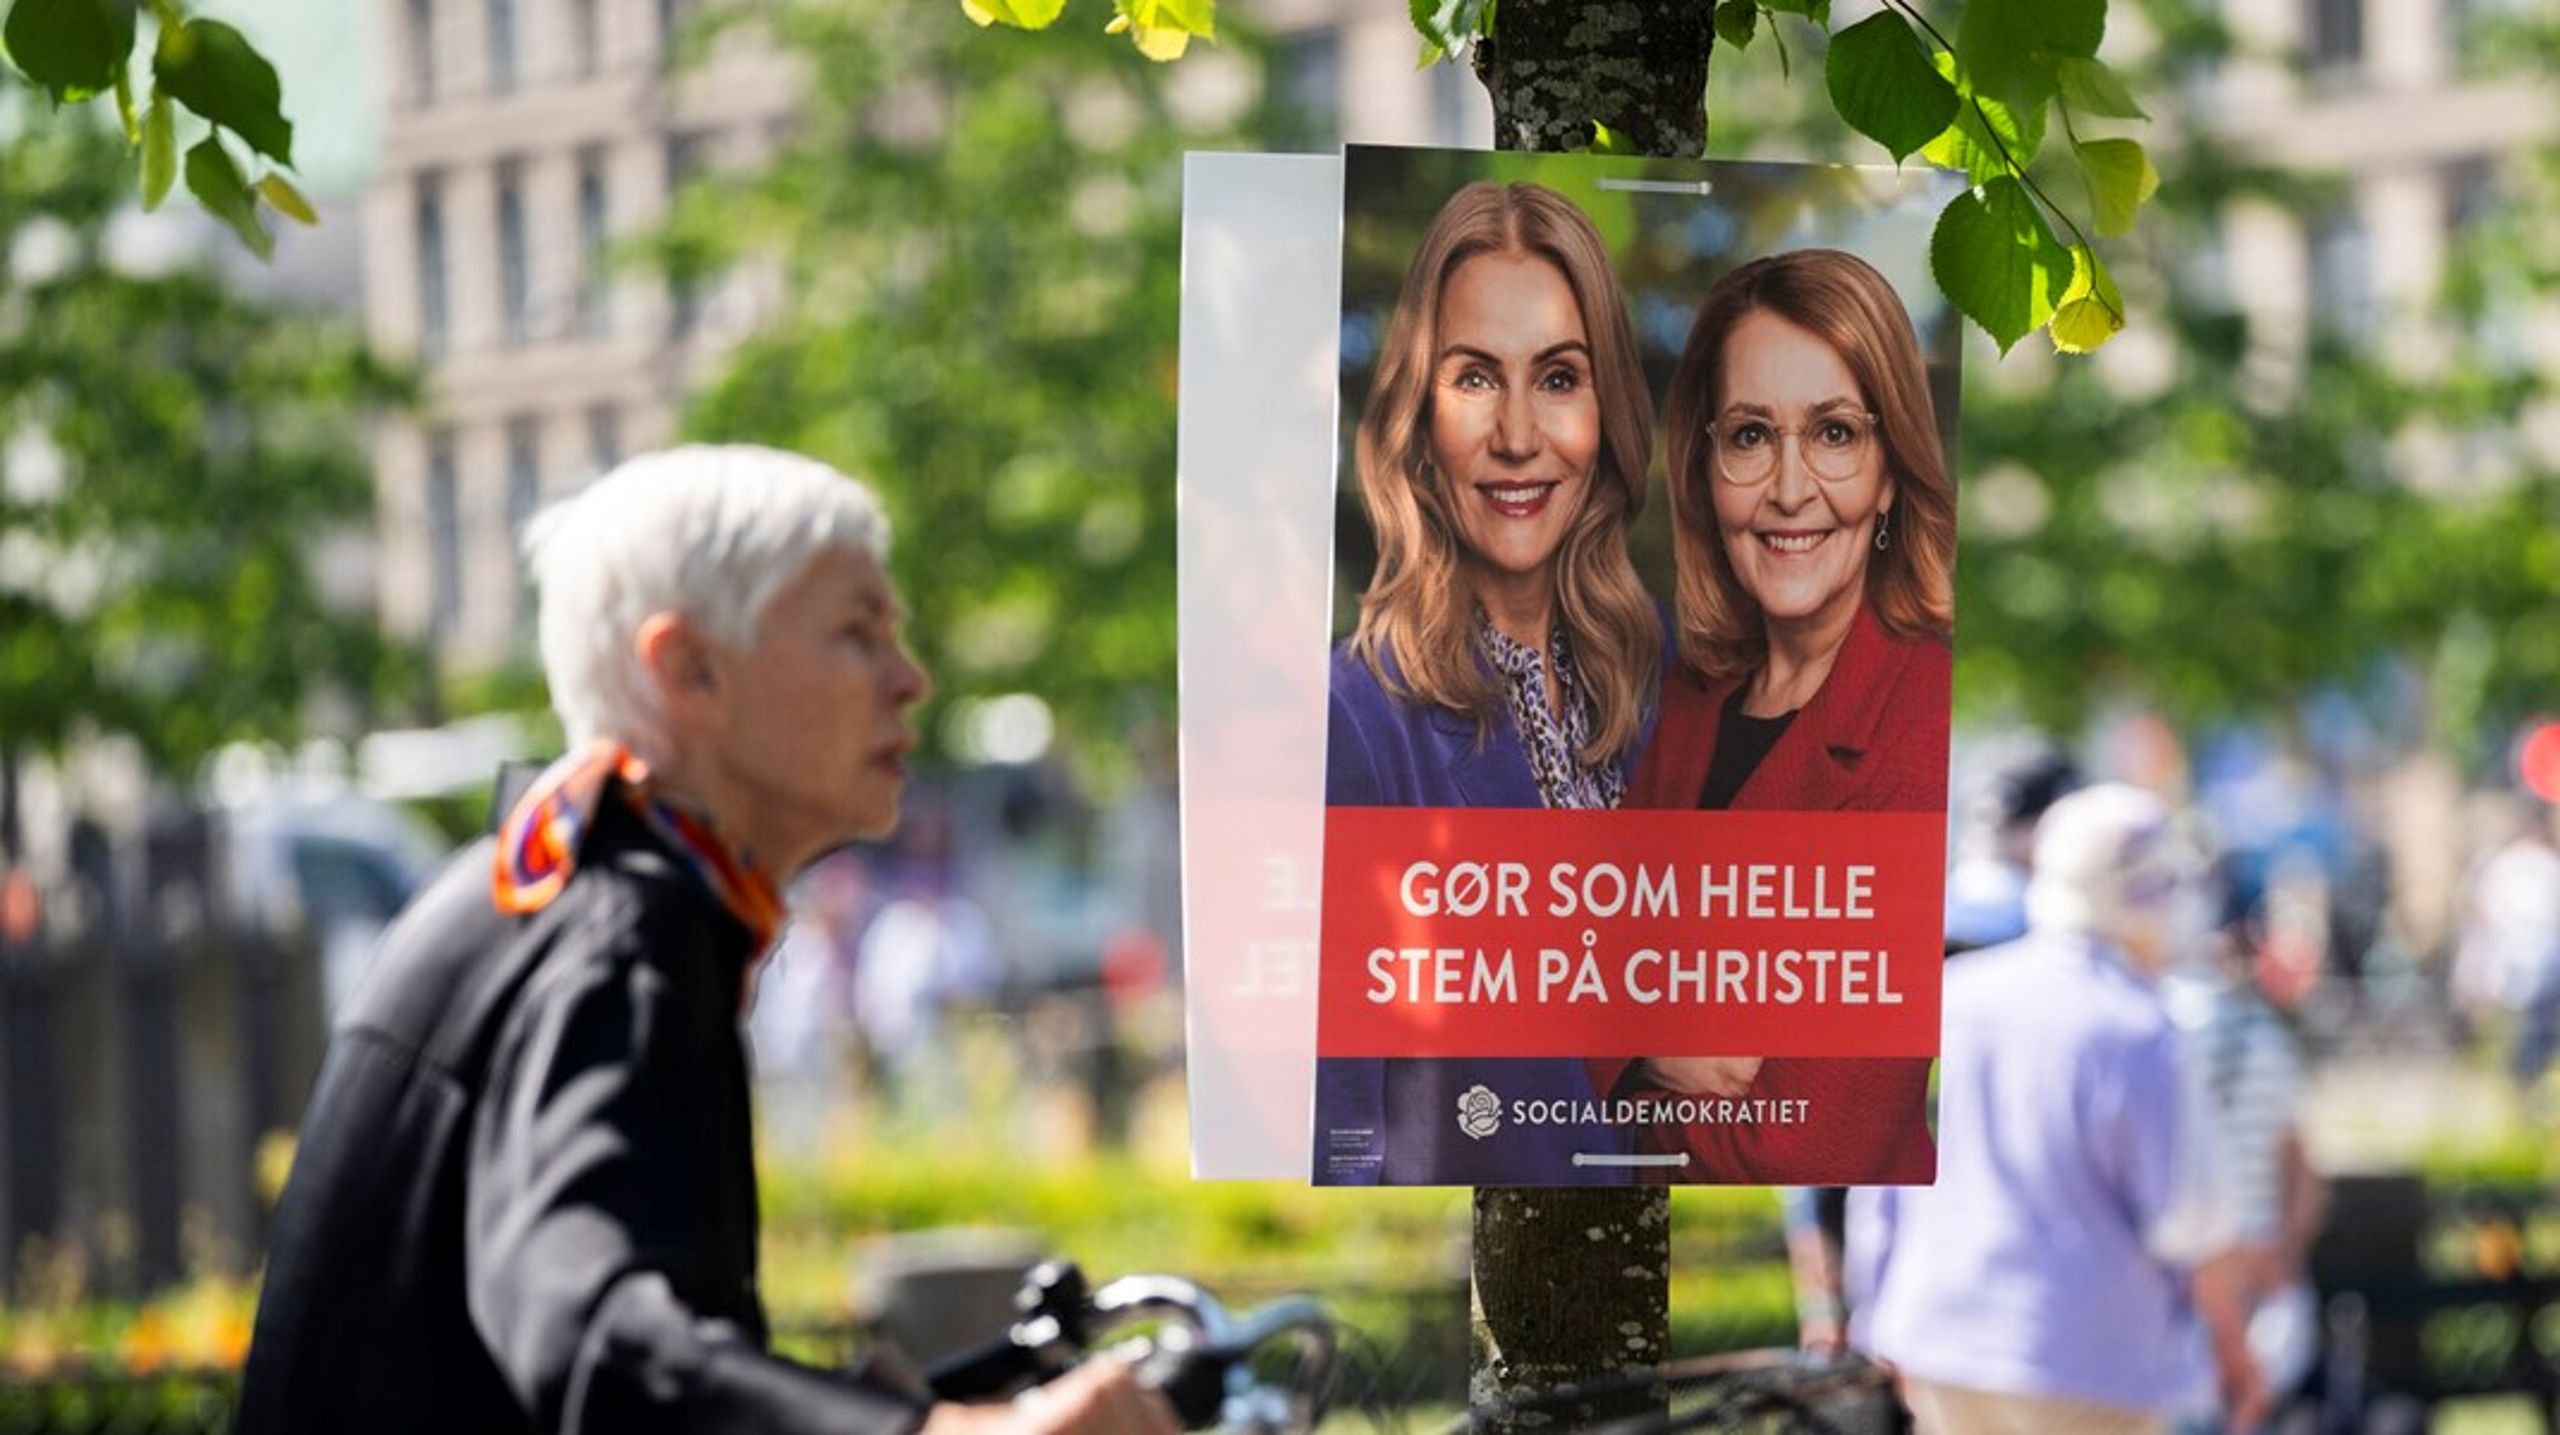 Tidligere statsminister og partiformand Helle Thorning-Schmidt er bare én af de S-profiler, der flankerer spidskandidat Christel Schaldemose på partiets valgplakater.